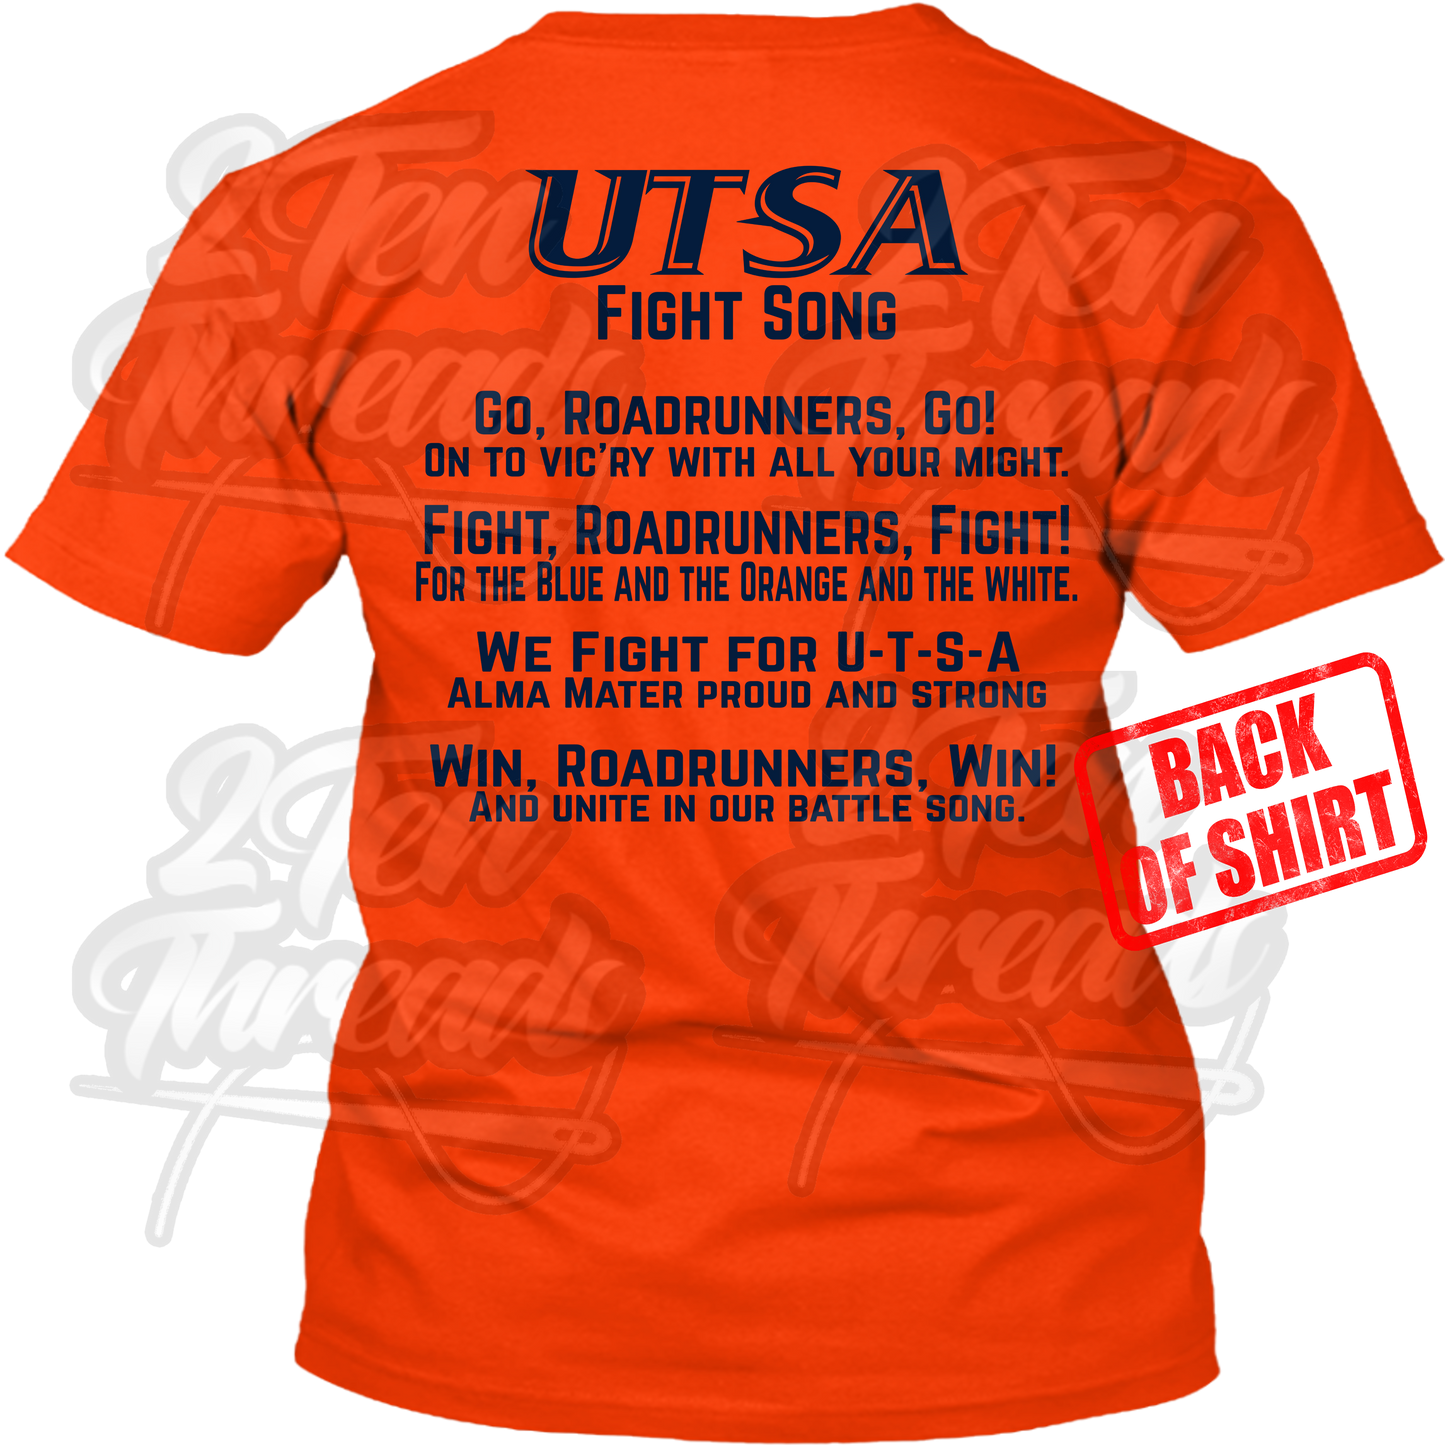 UTSA S.O.S.A Fight Shirt!